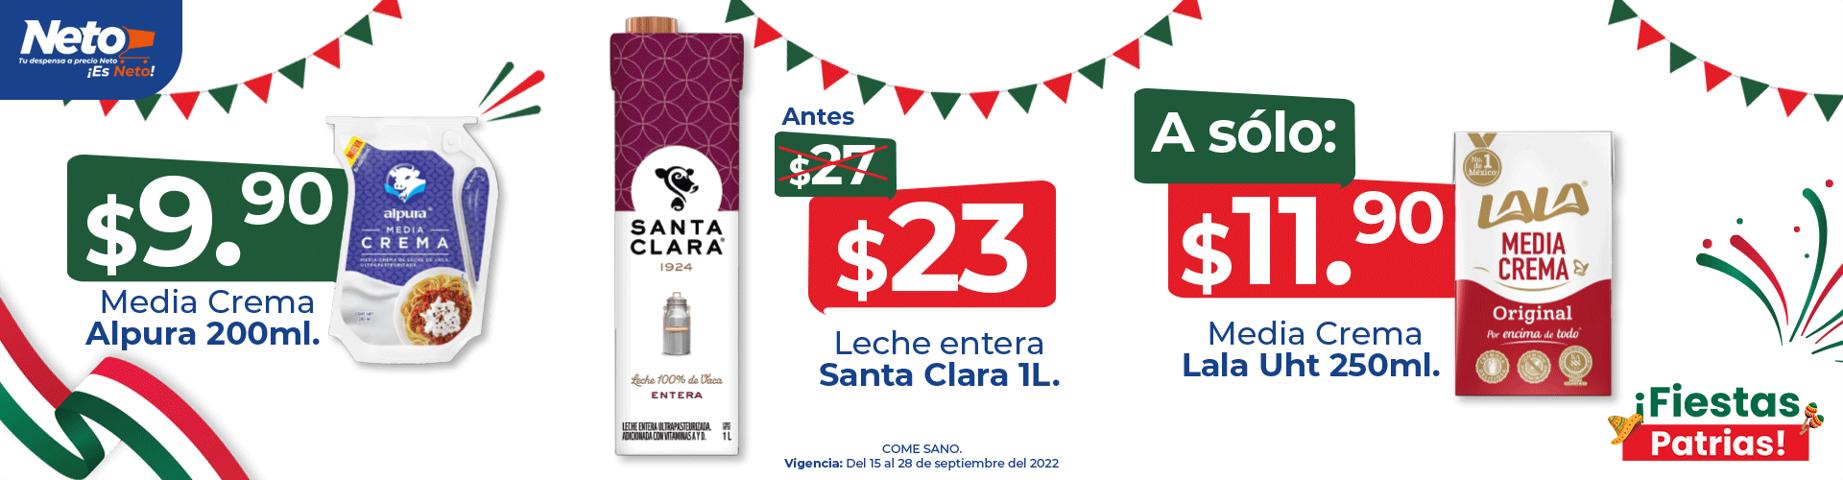 Ofertas de Hiper-Supermercados en Heróica Puebla de Zaragoza | Ofertas Tiendas Neto de Tiendas Neto | 15/9/2022 - 28/9/2022